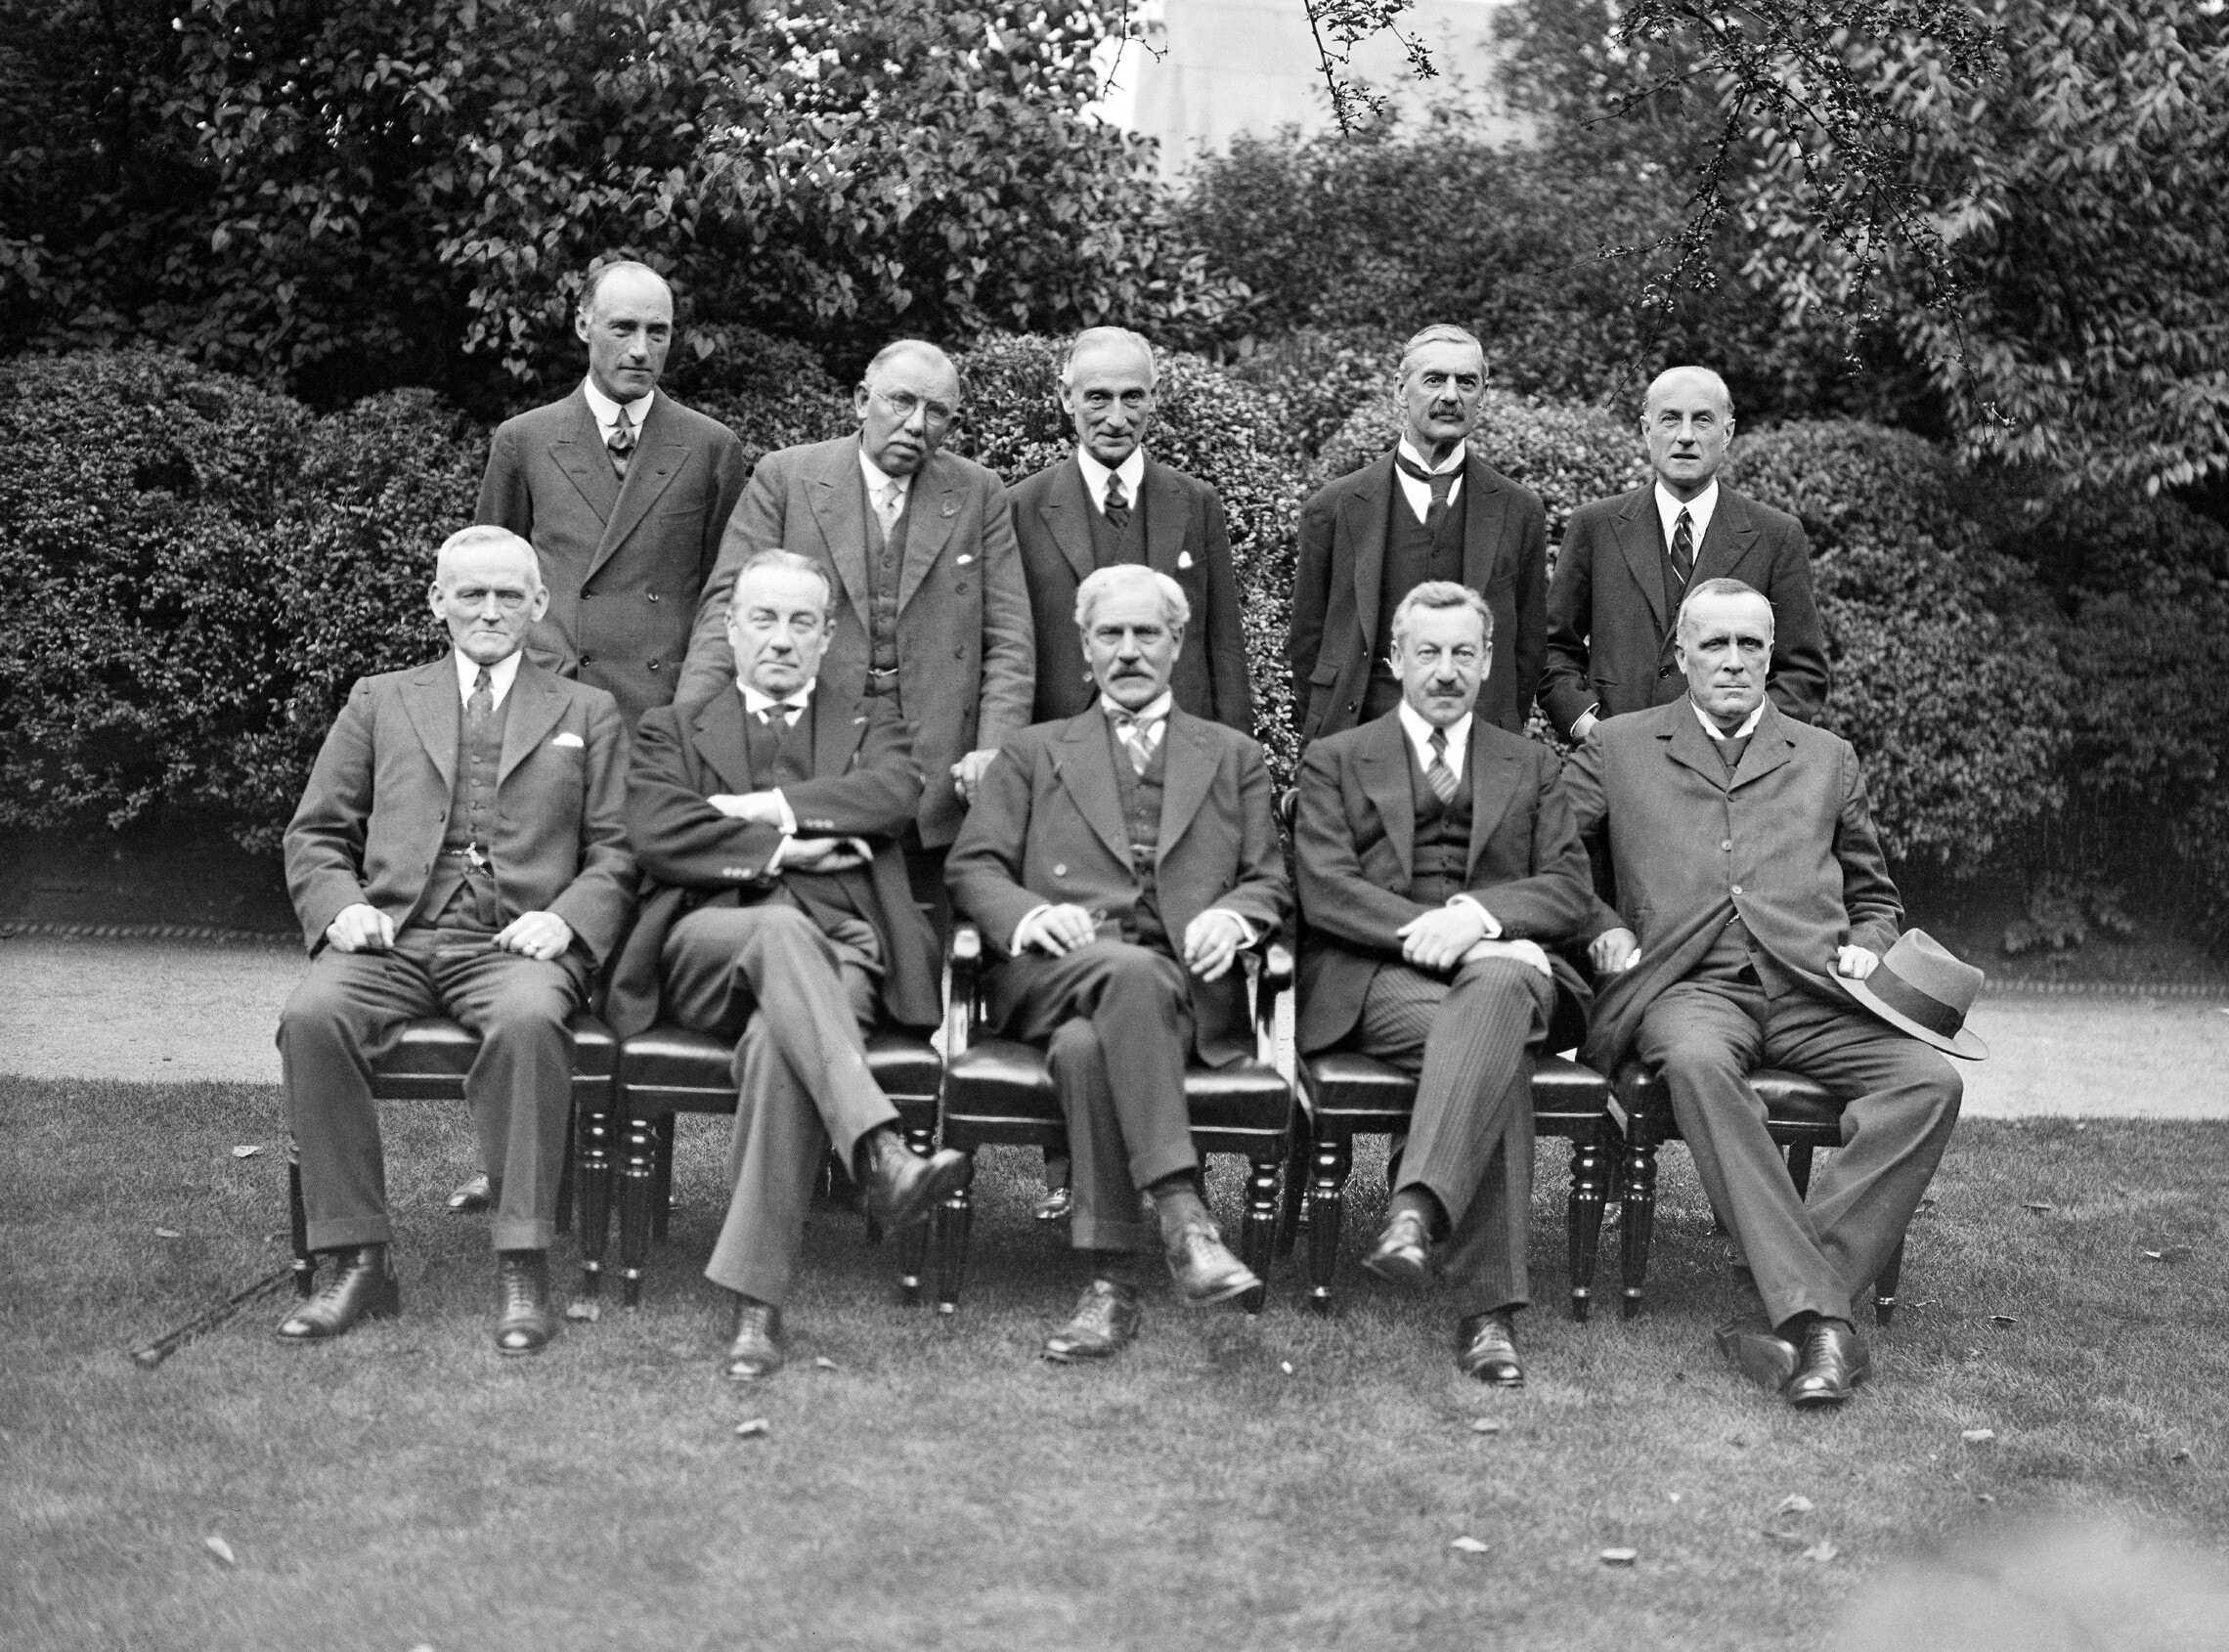 חברי הממשלה הבריטית החדשה, בהם הרברט סמואל, נפגשים עם ראש הממשלה רמזי מקדונלד, לונדון, 8 בספטמבר 1931 (צילום: AP)